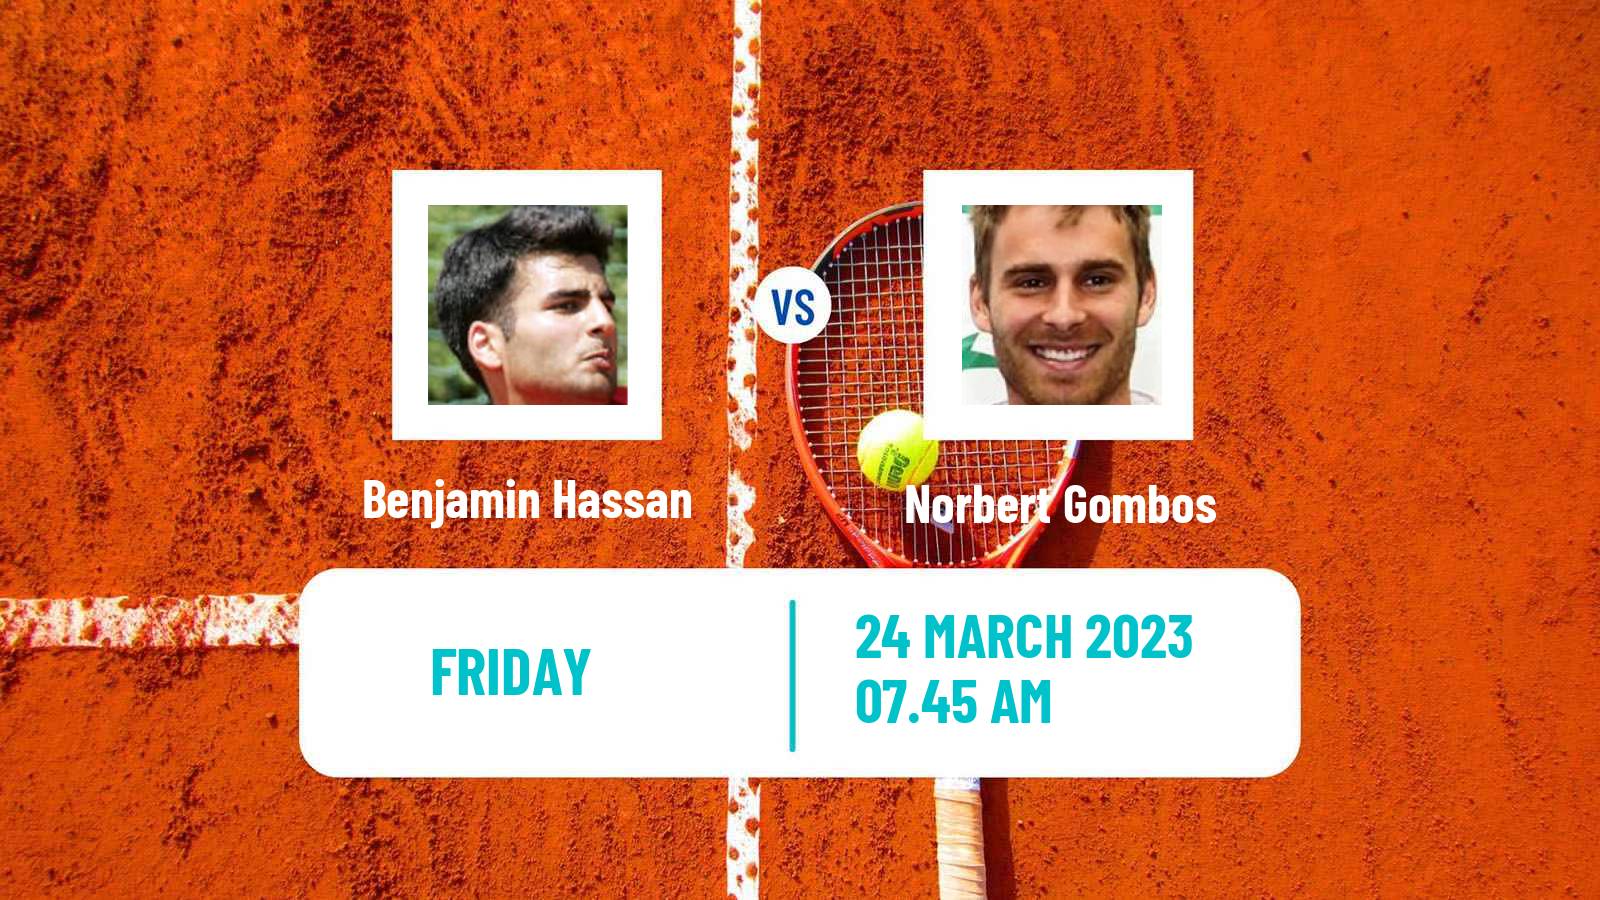 Tennis ATP Challenger Benjamin Hassan - Norbert Gombos